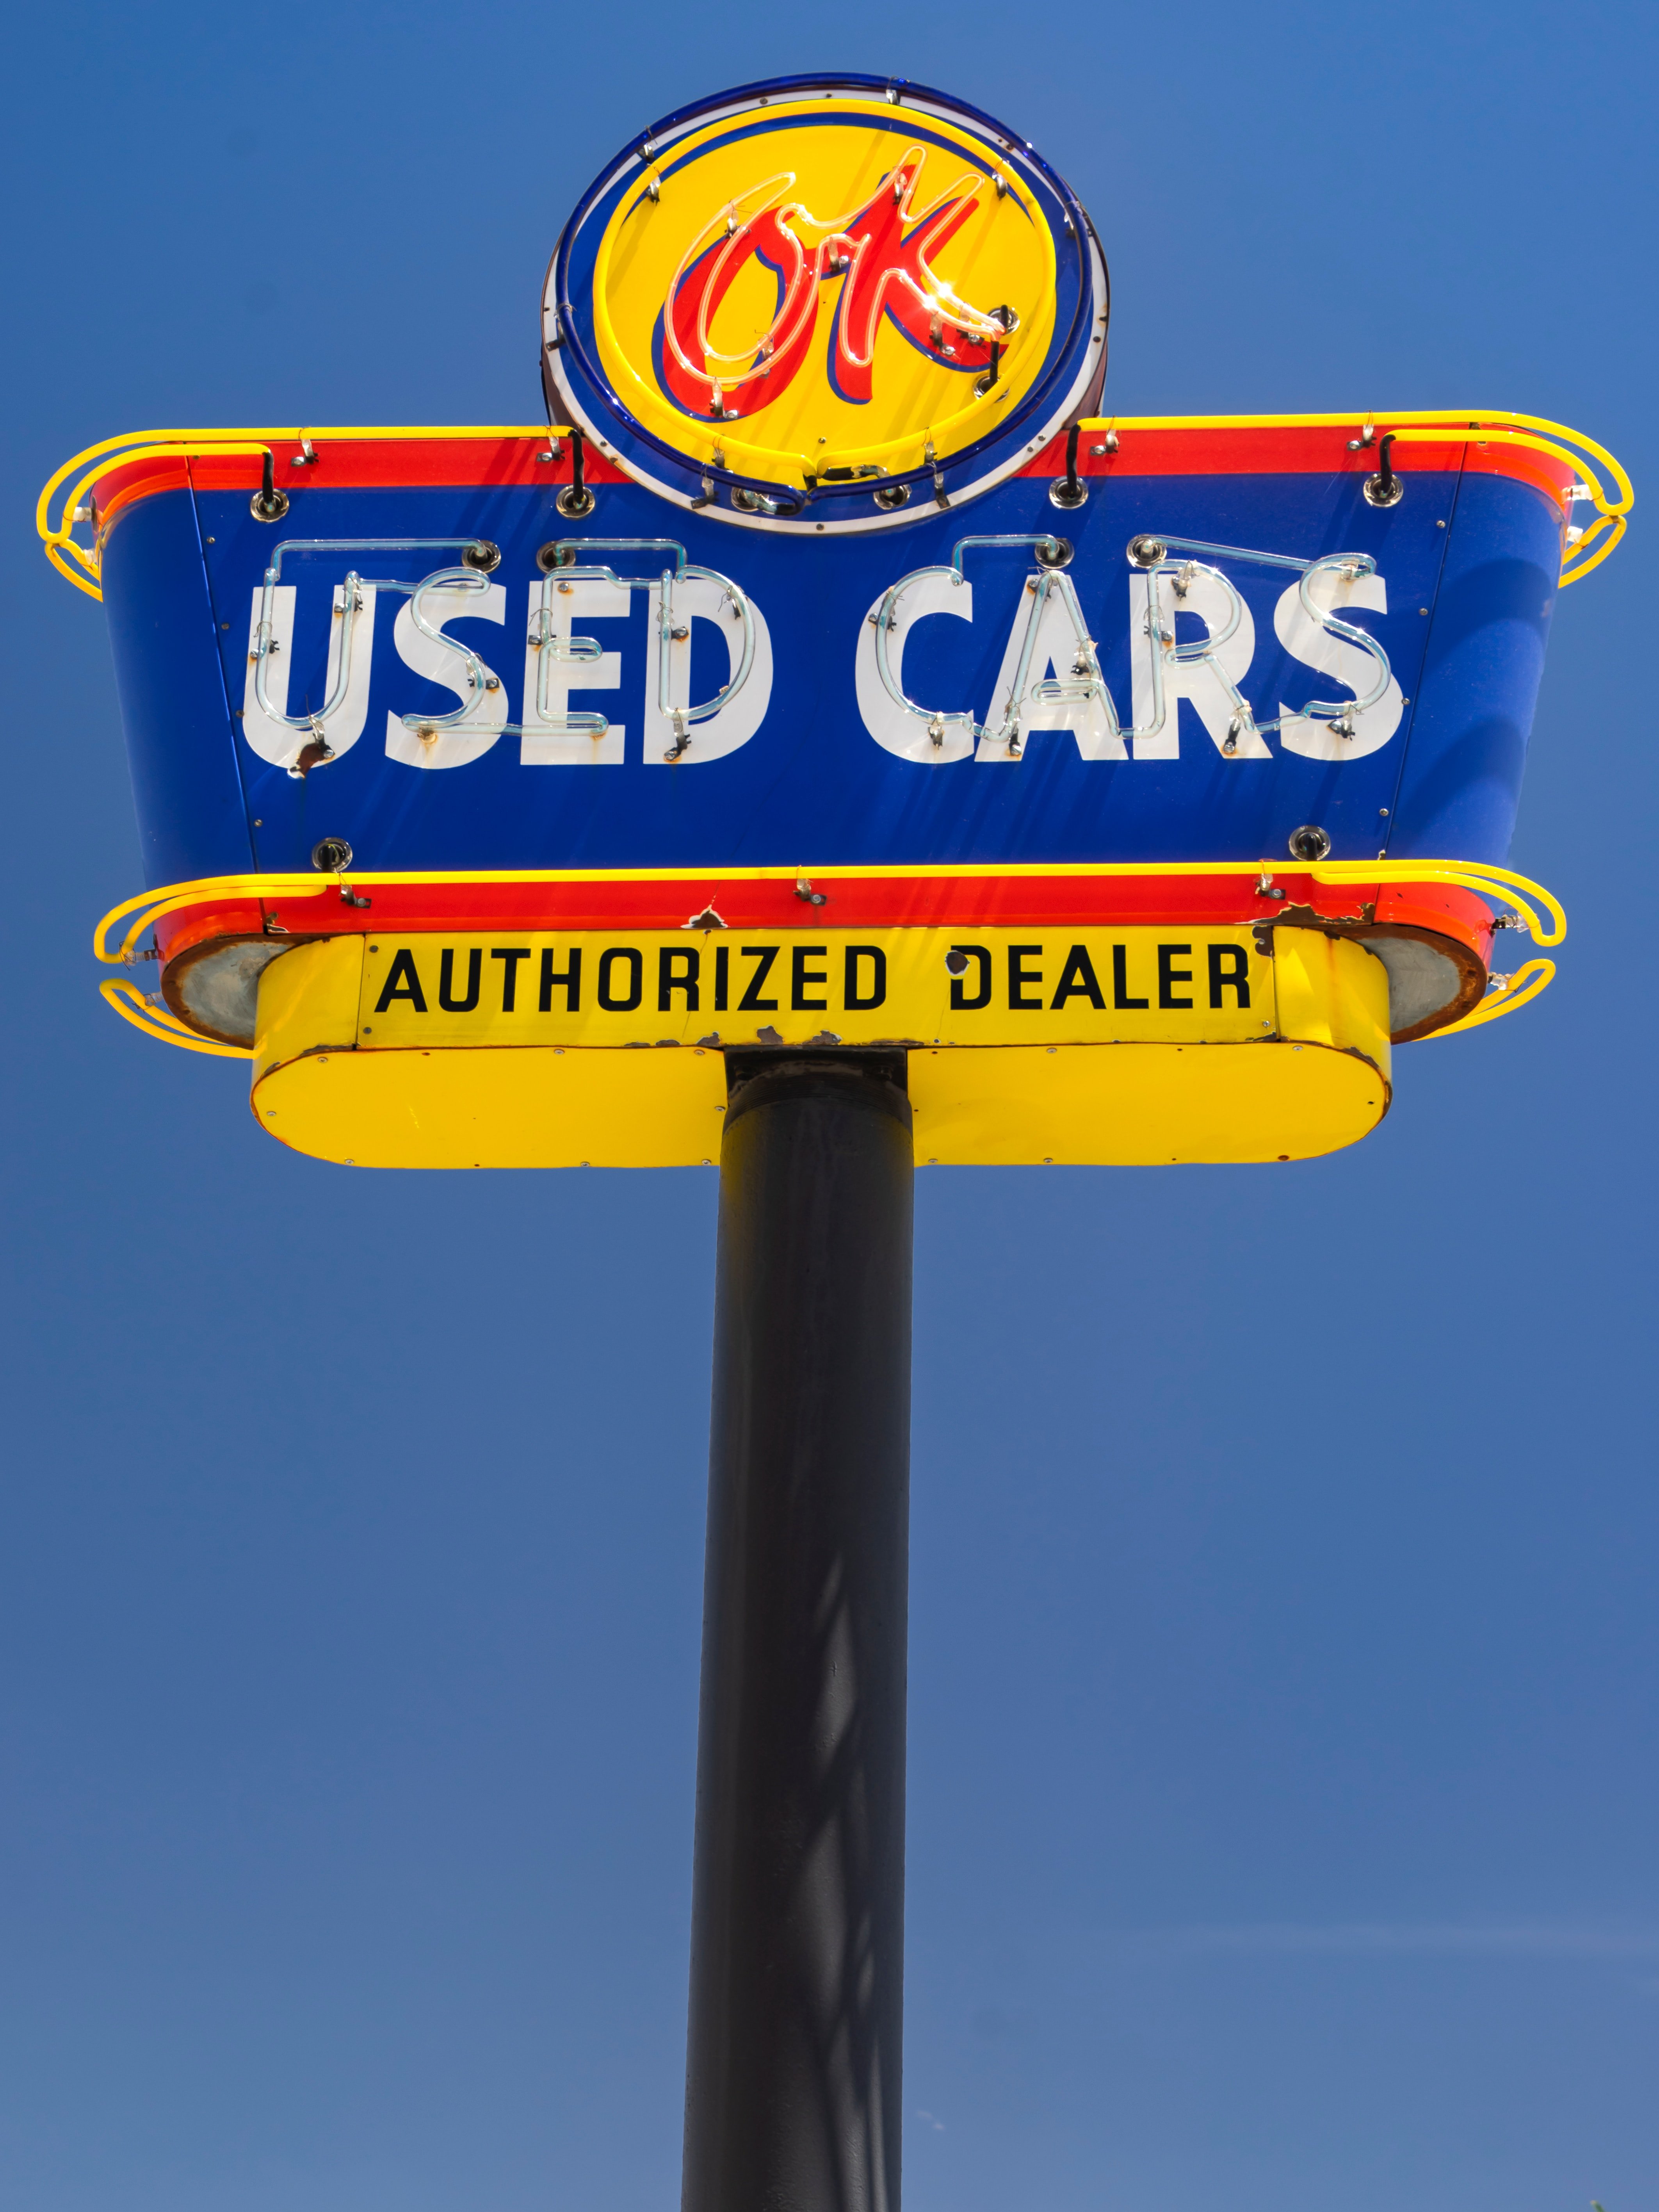 A used car dealership sign | source: Unsplash.com